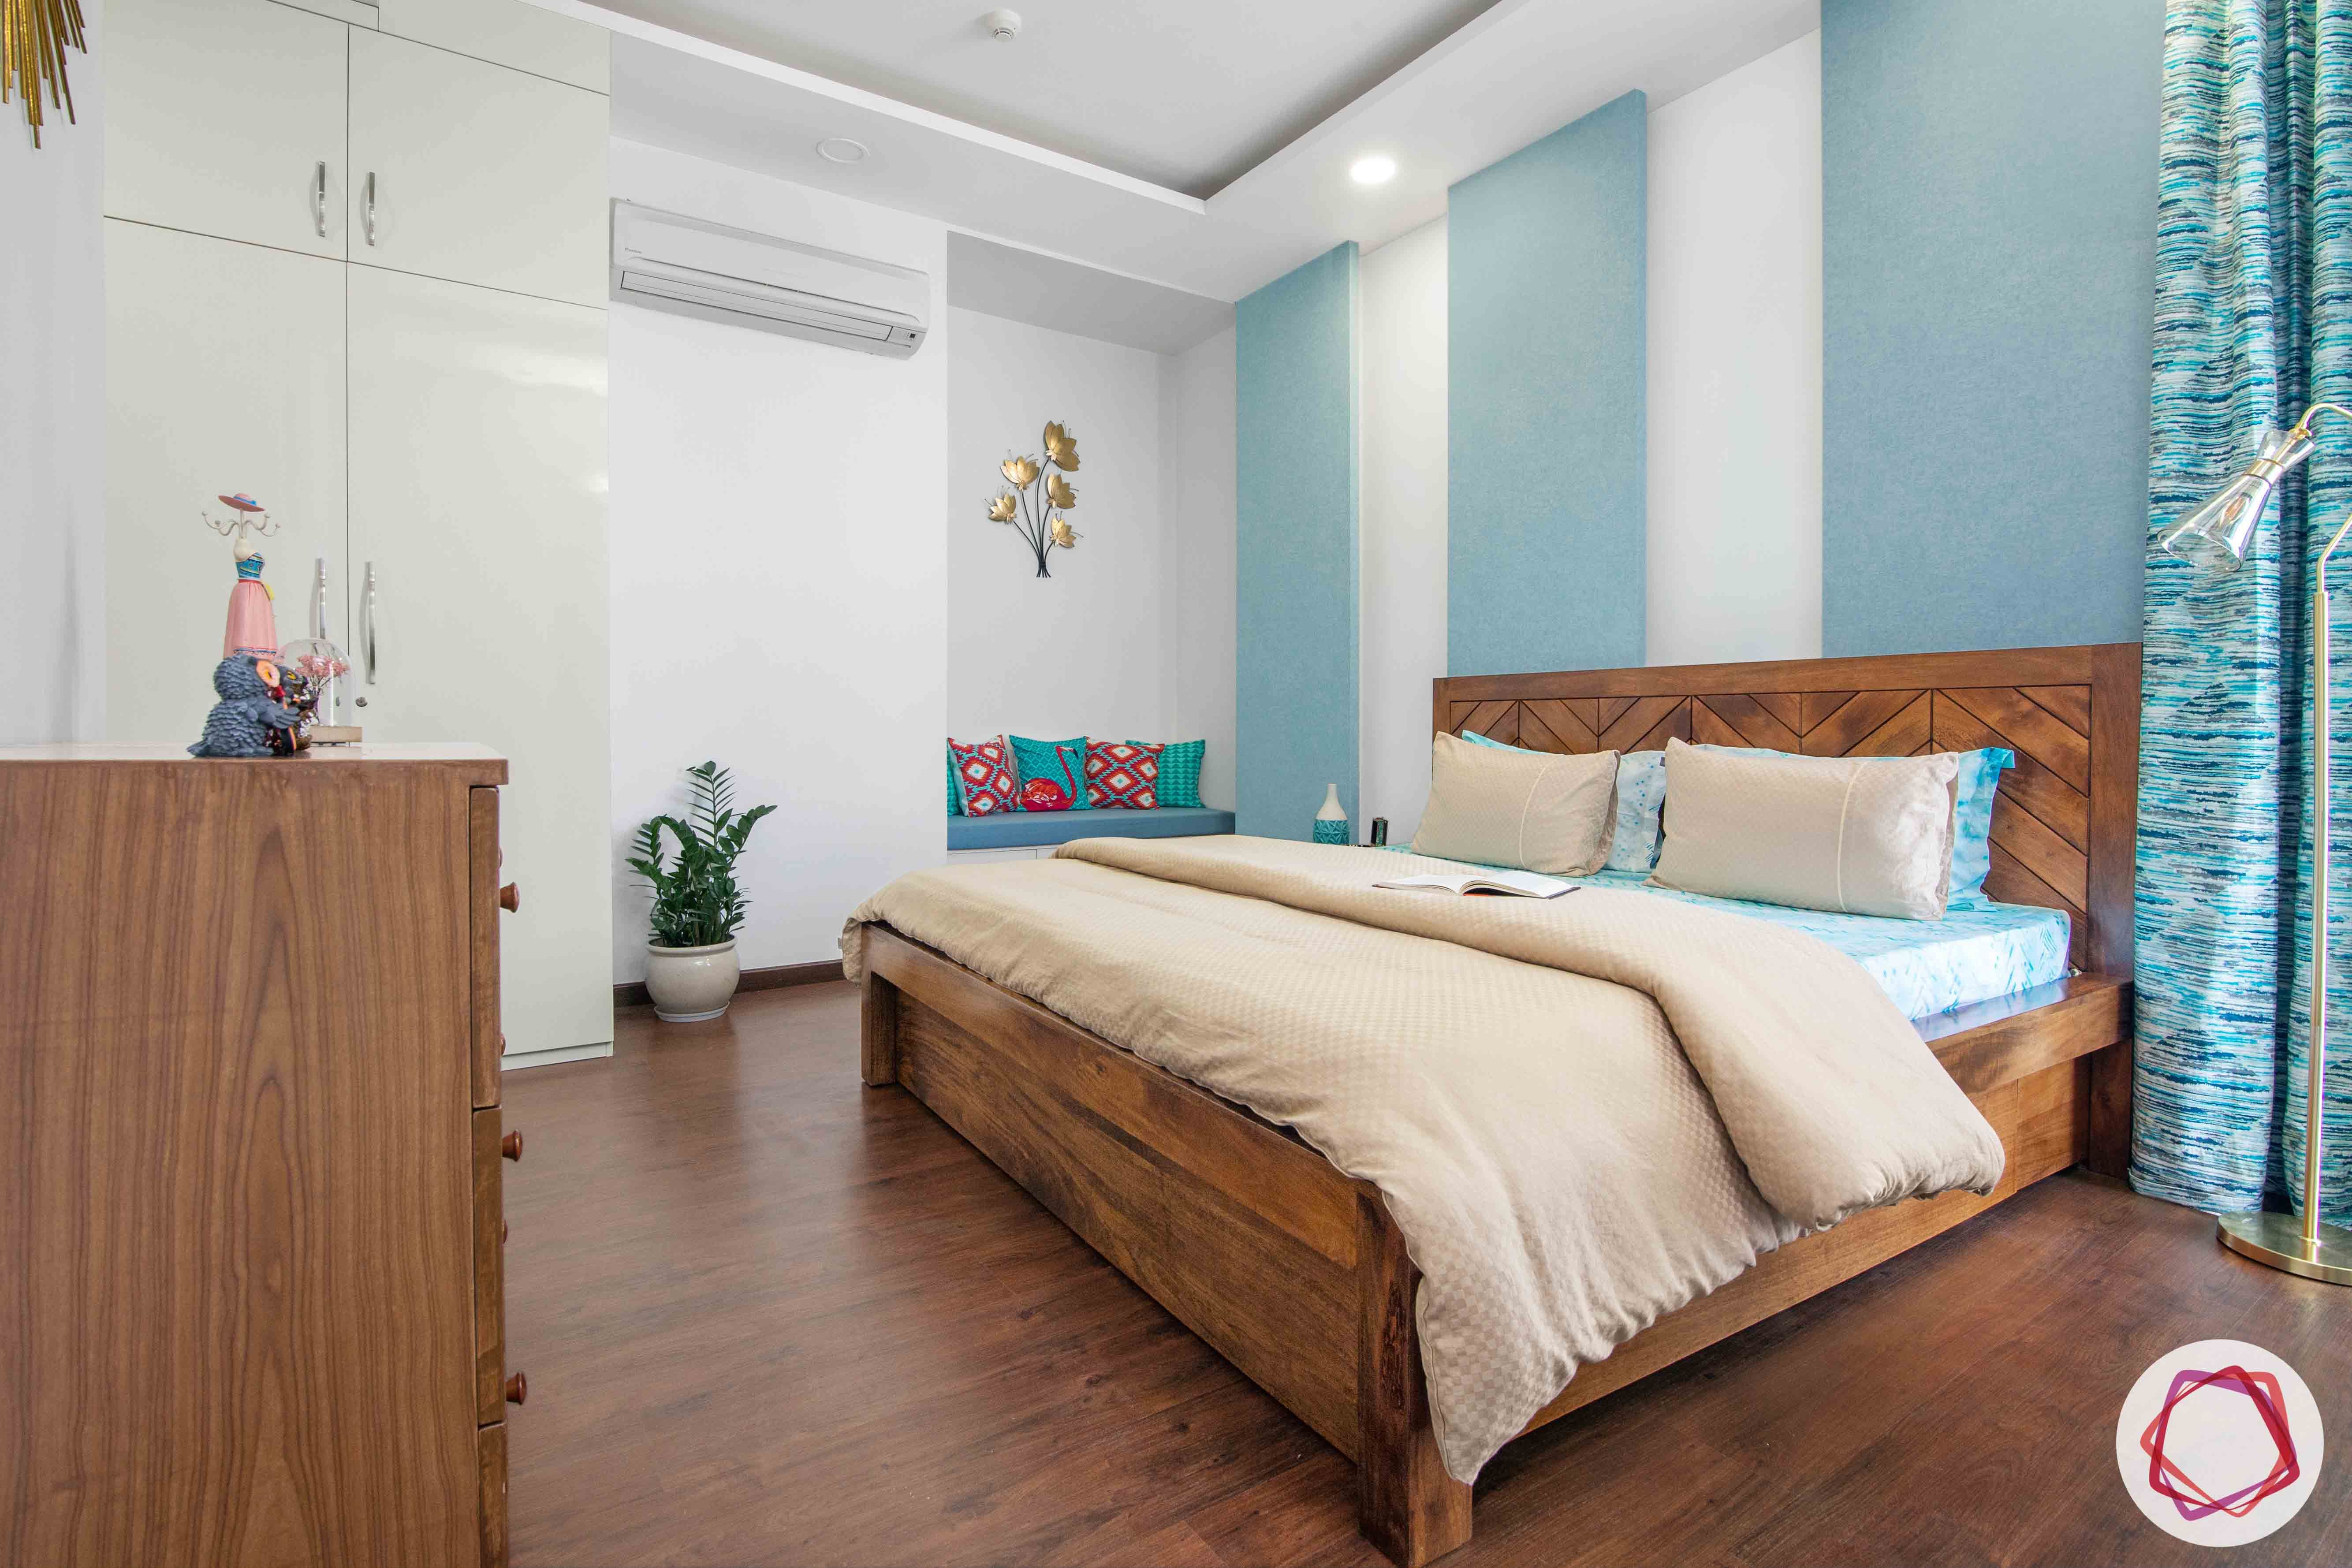 ireo victory valley-master bedroom-wooden flooring-wooden bed-wooden sideboard